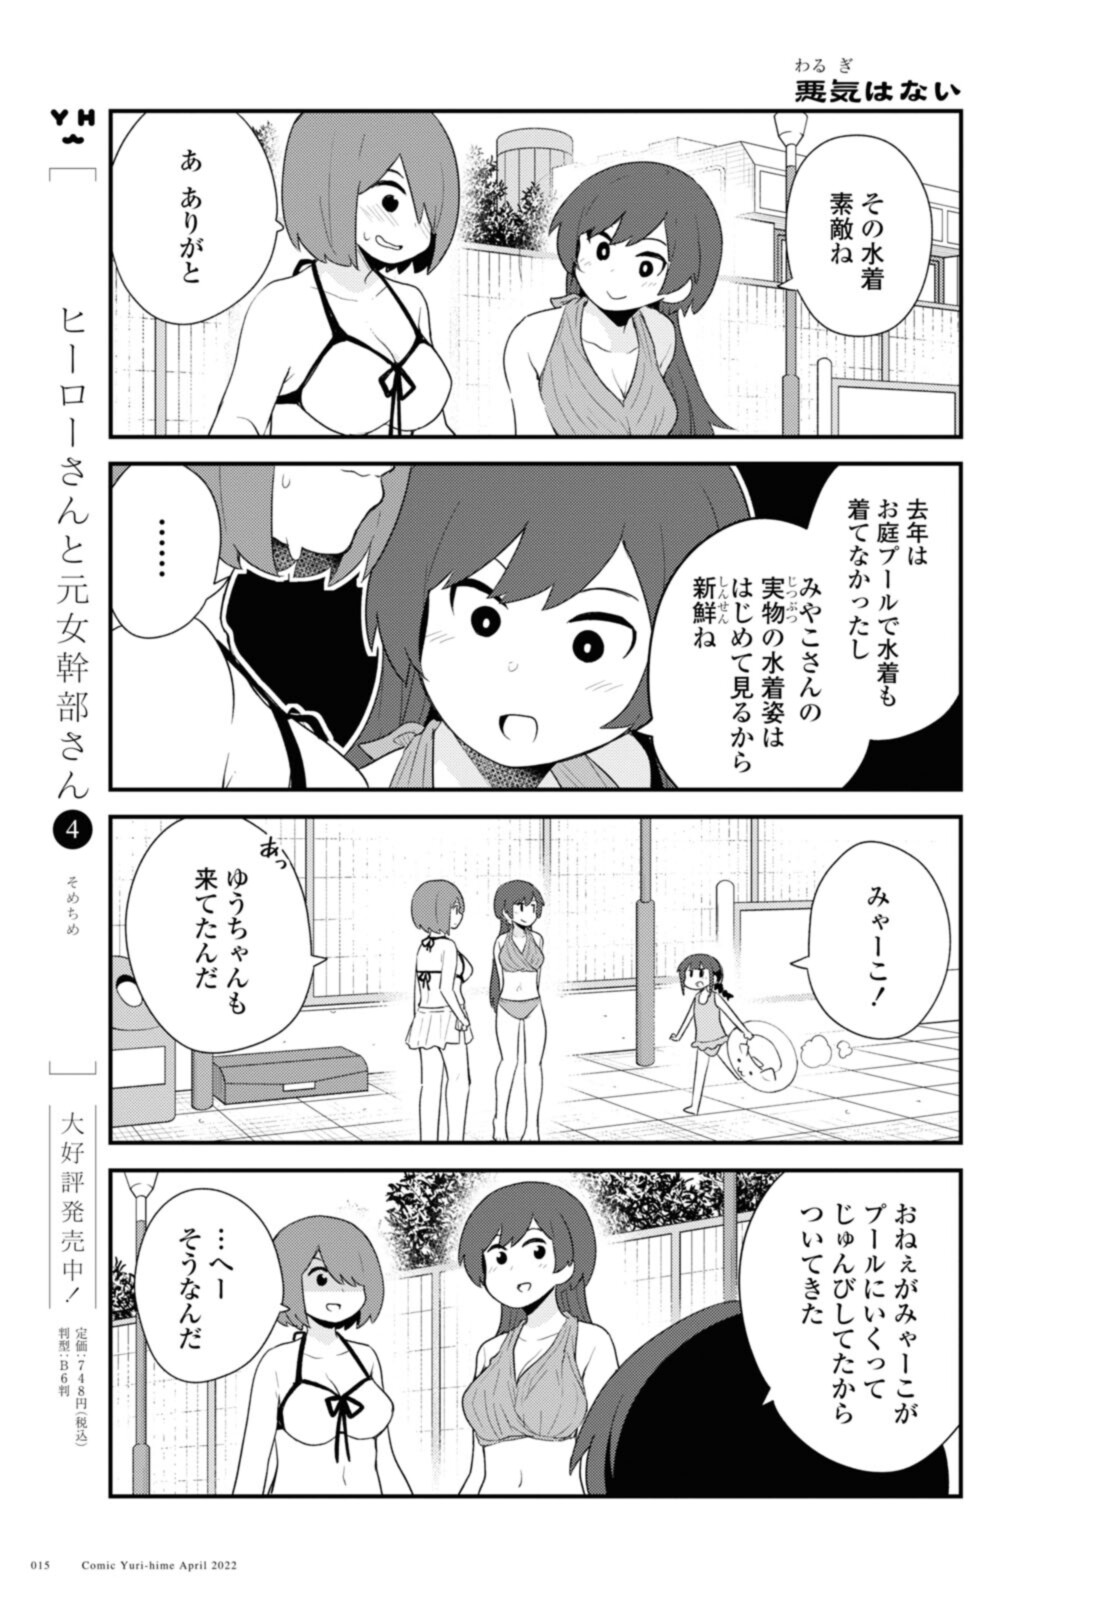 Watashi ni Tenshi ga Maiorita! - Chapter 94.2 - Page 1